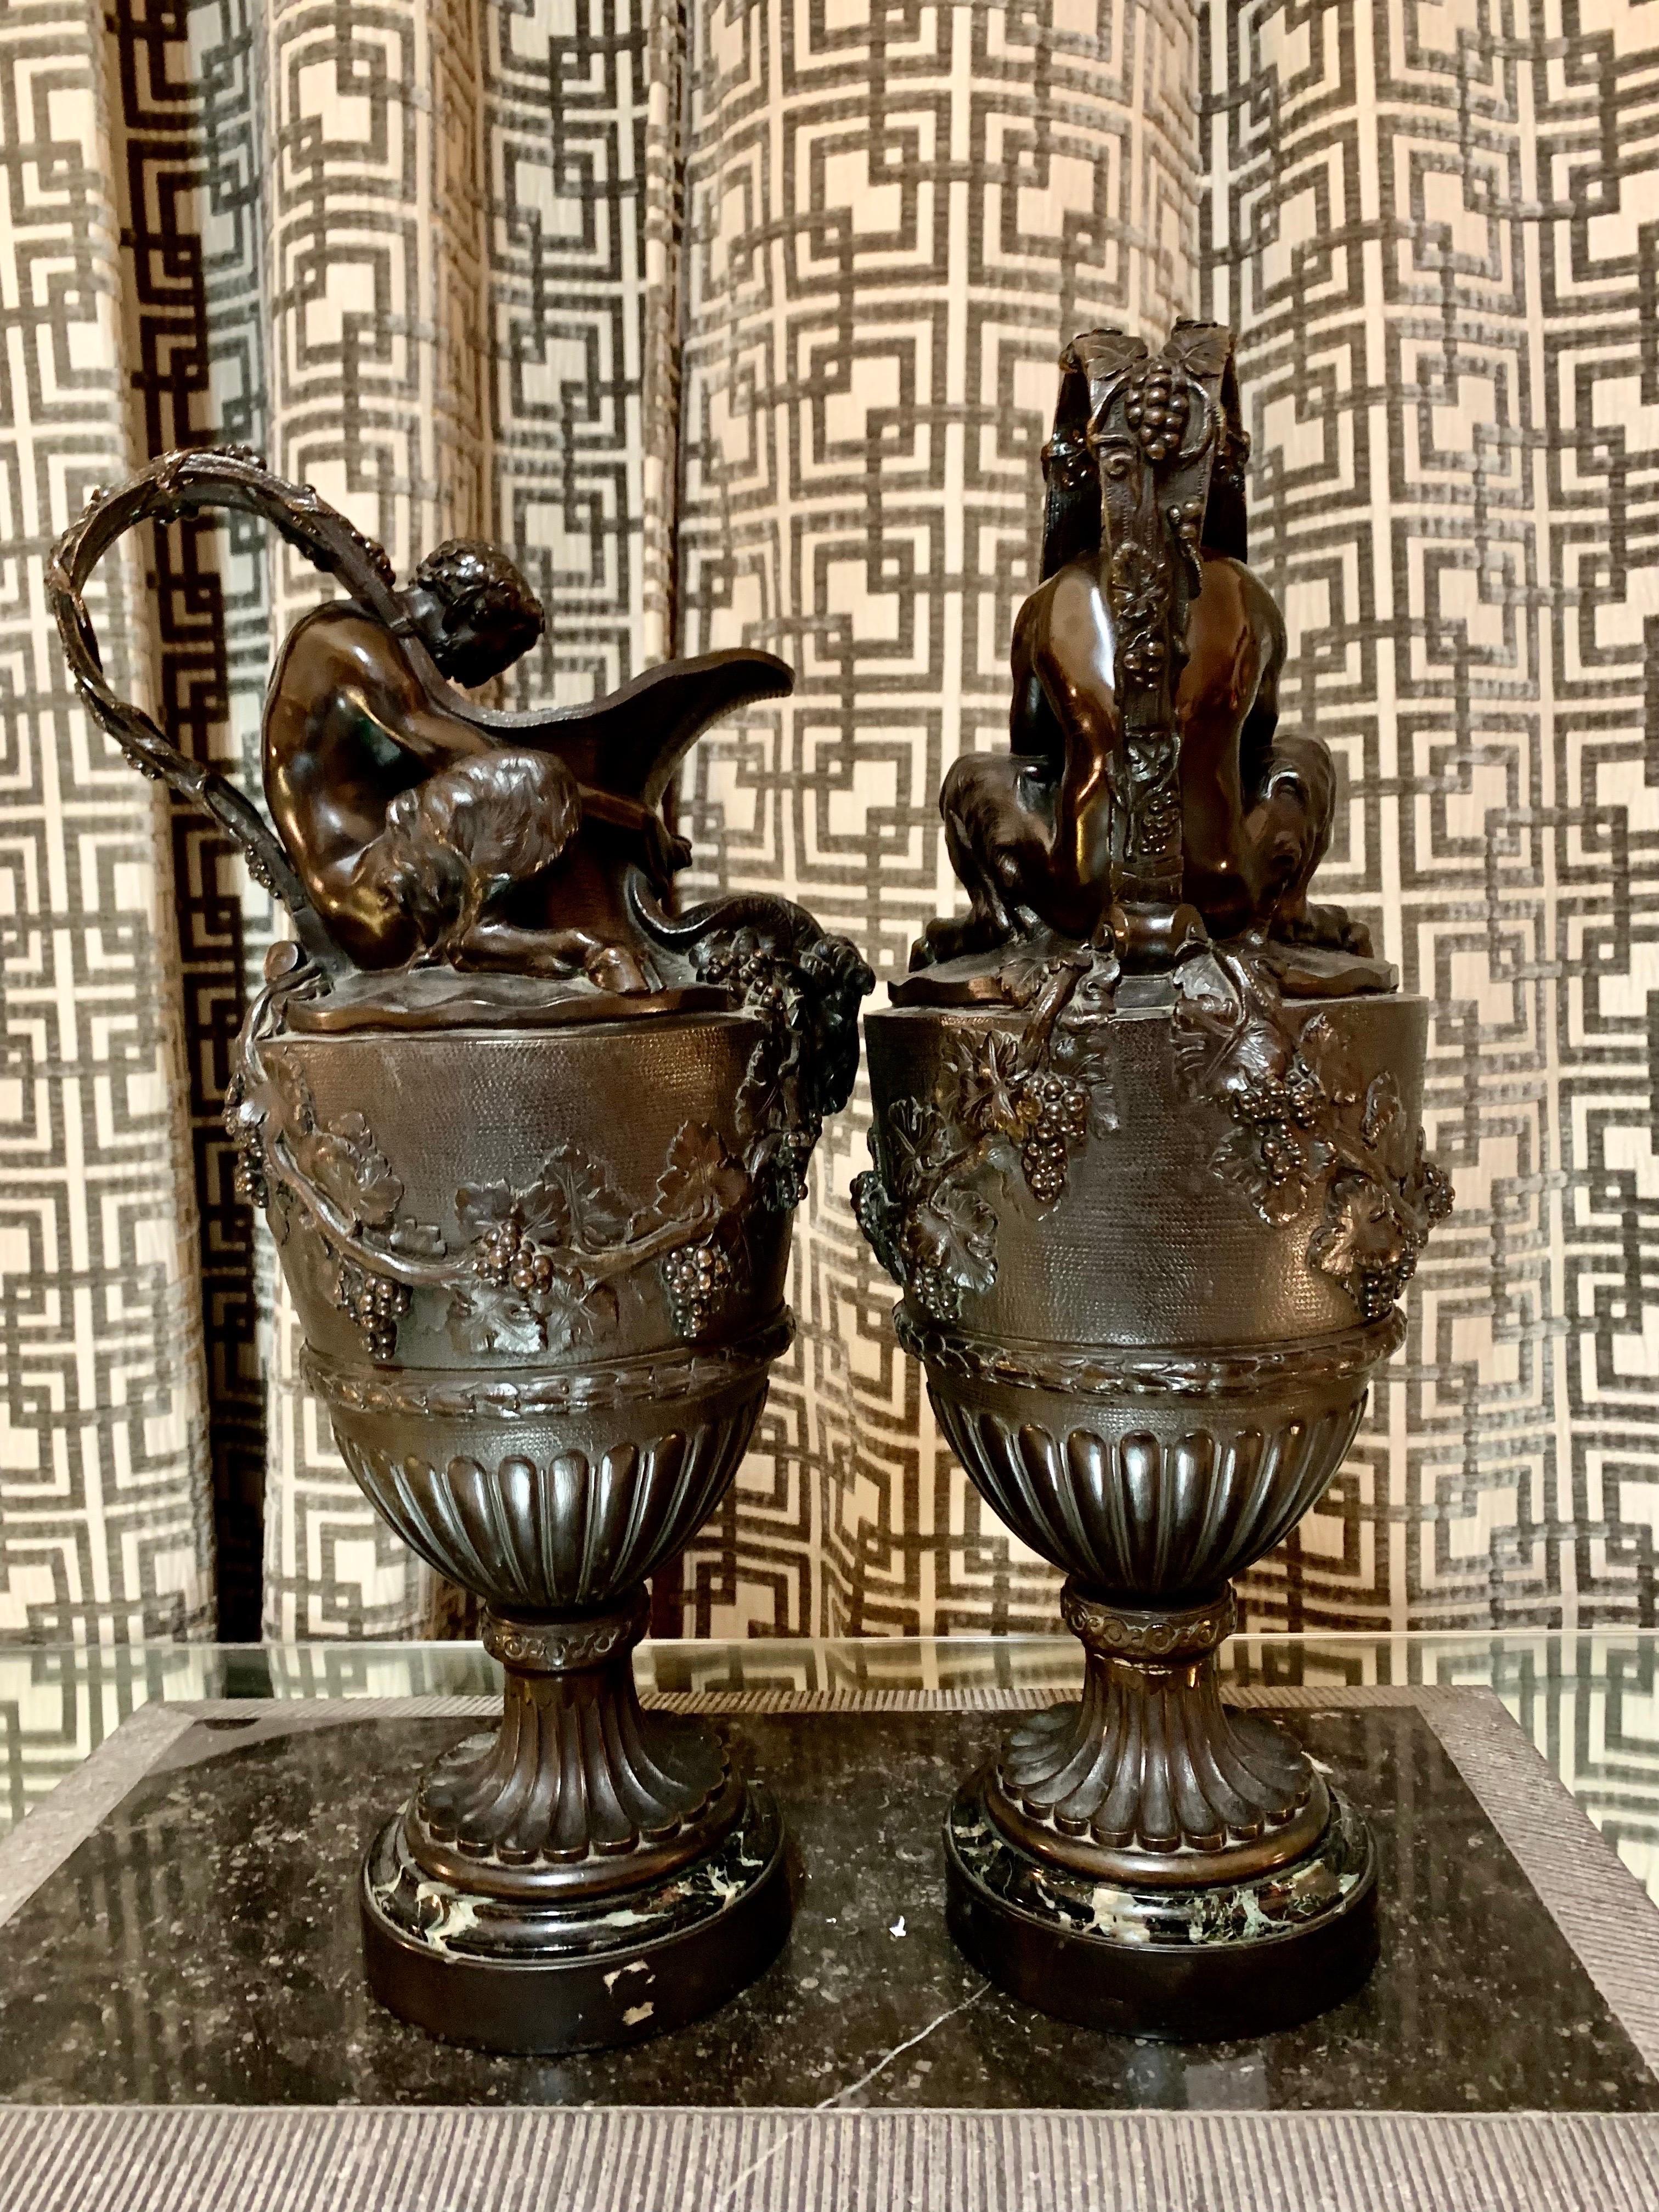 Ein Paar französische Vasen oder Urnen des späten 19. Jahrhunderts im Stil von C.M.Clodion, aus patinierter Bronze mit einem Sockel aus schwarzem belgischem Marmor.
Die Vasen sind im Stil der Neurenaissance gehalten, und auf ihnen sind zwei